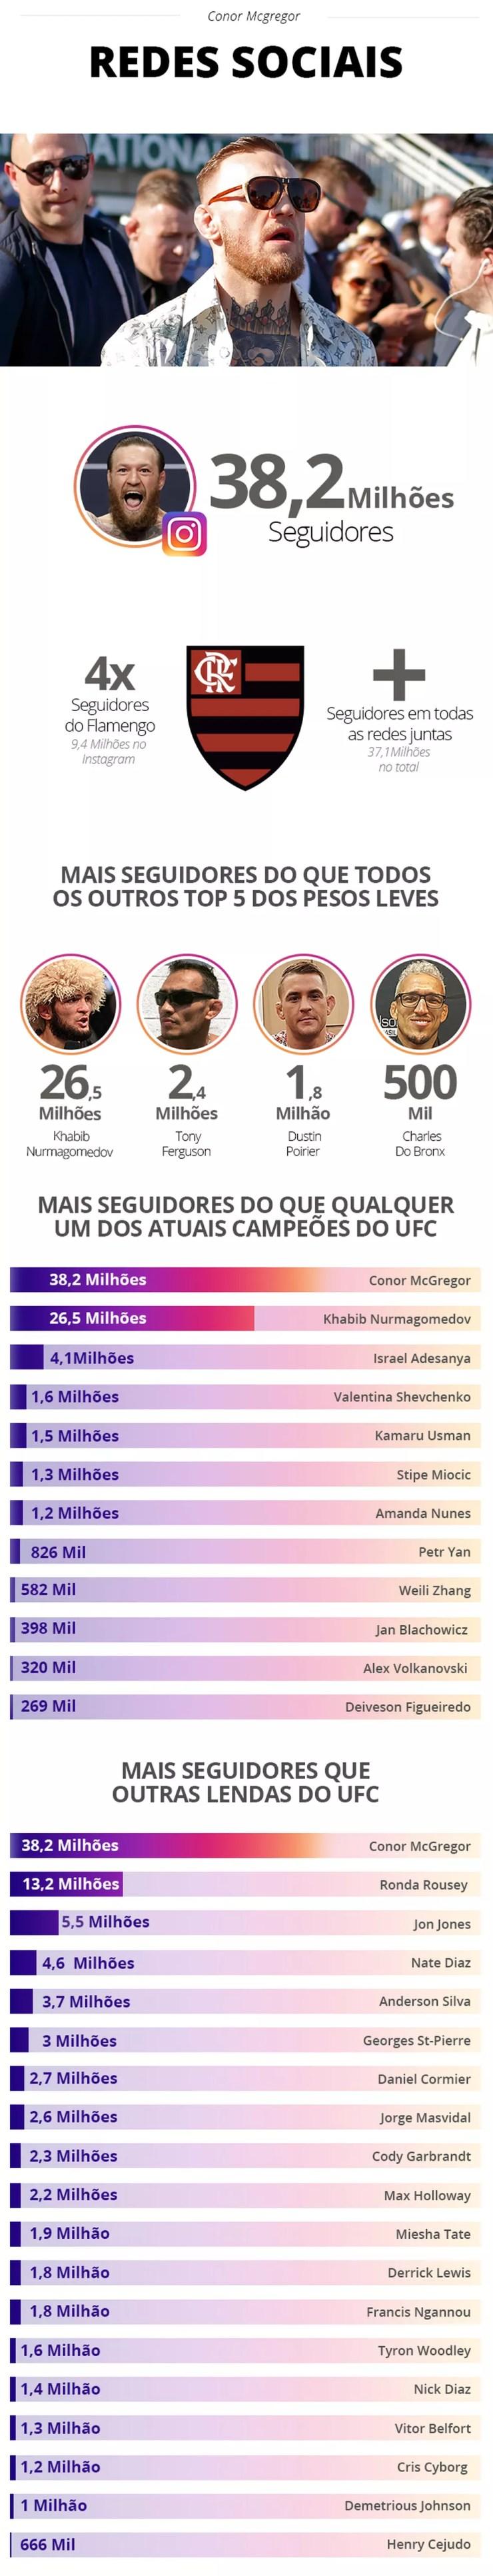 Dinheiro para pagar dívida do Santos e mais seguidores que o Flamengo: o tamanho de Conor McGregor